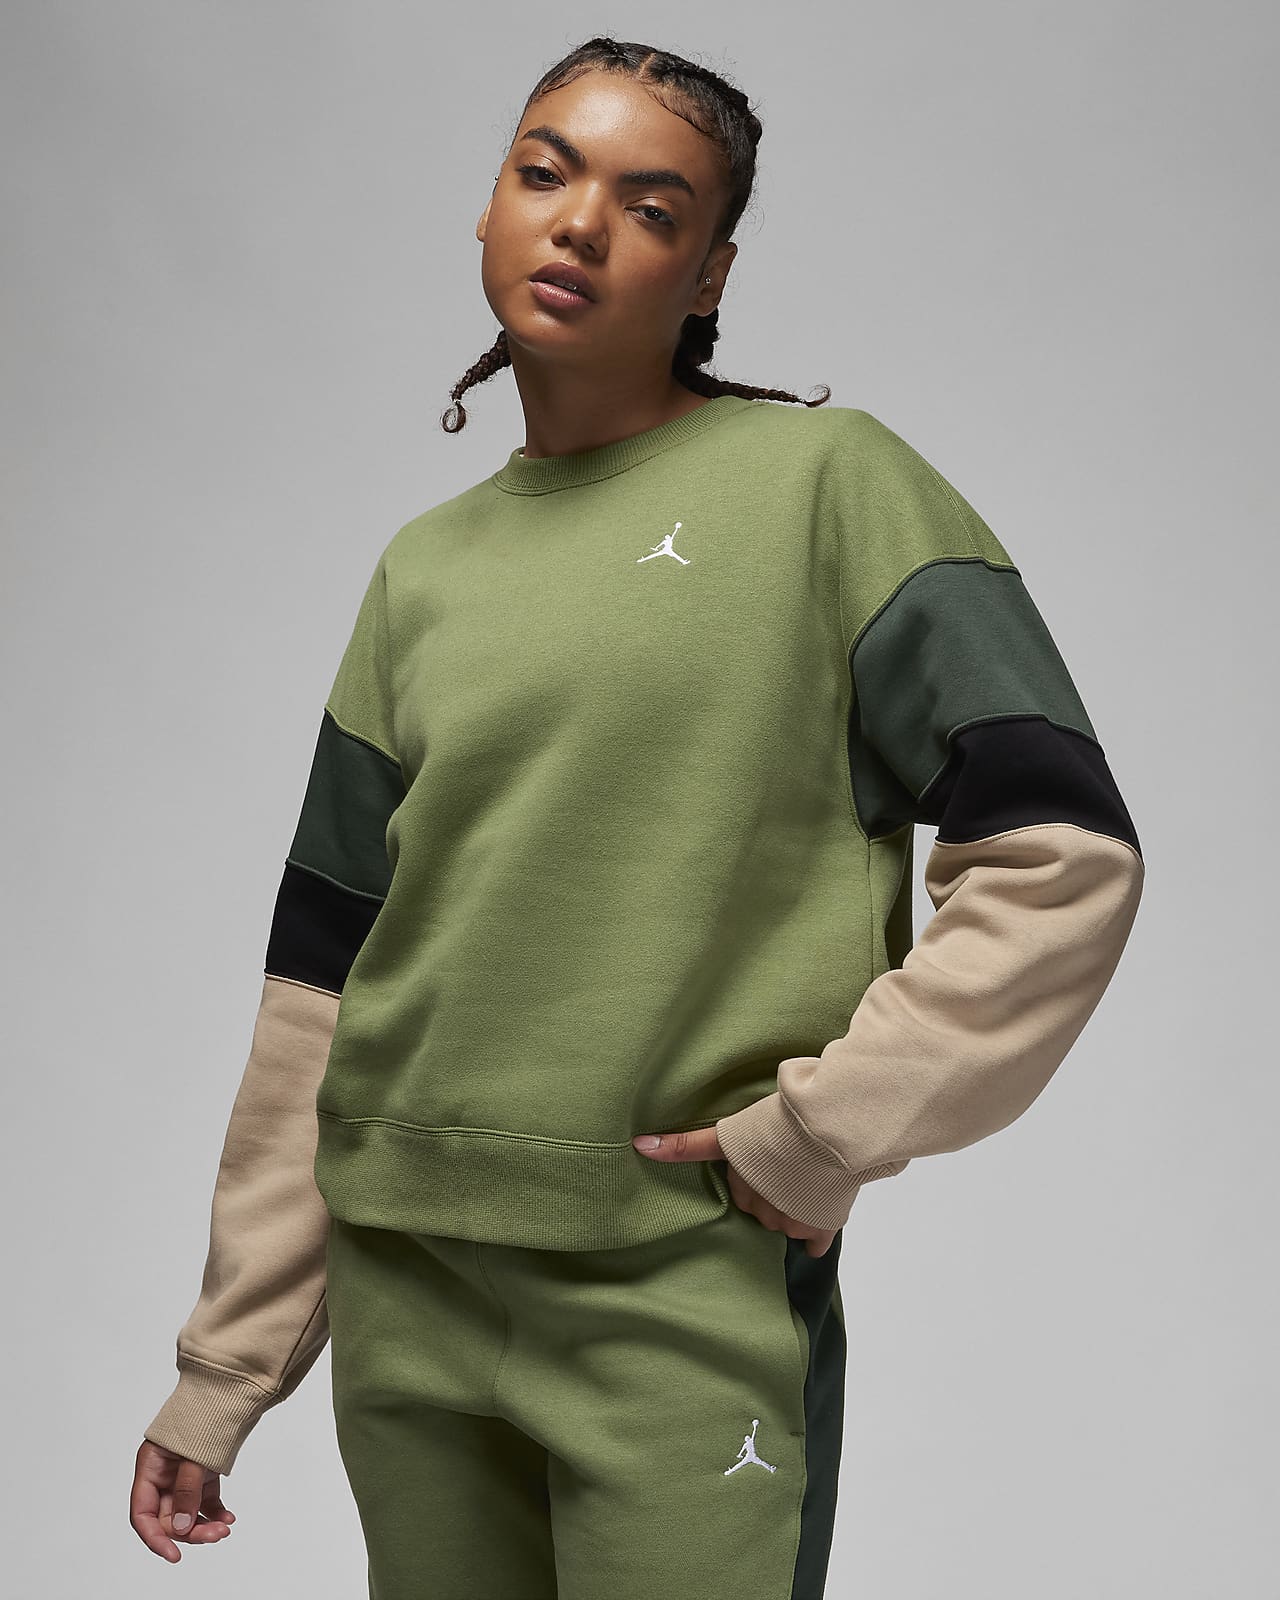 Jordan Brooklyn Fleece Kadın Crew Sweatshirt'ü